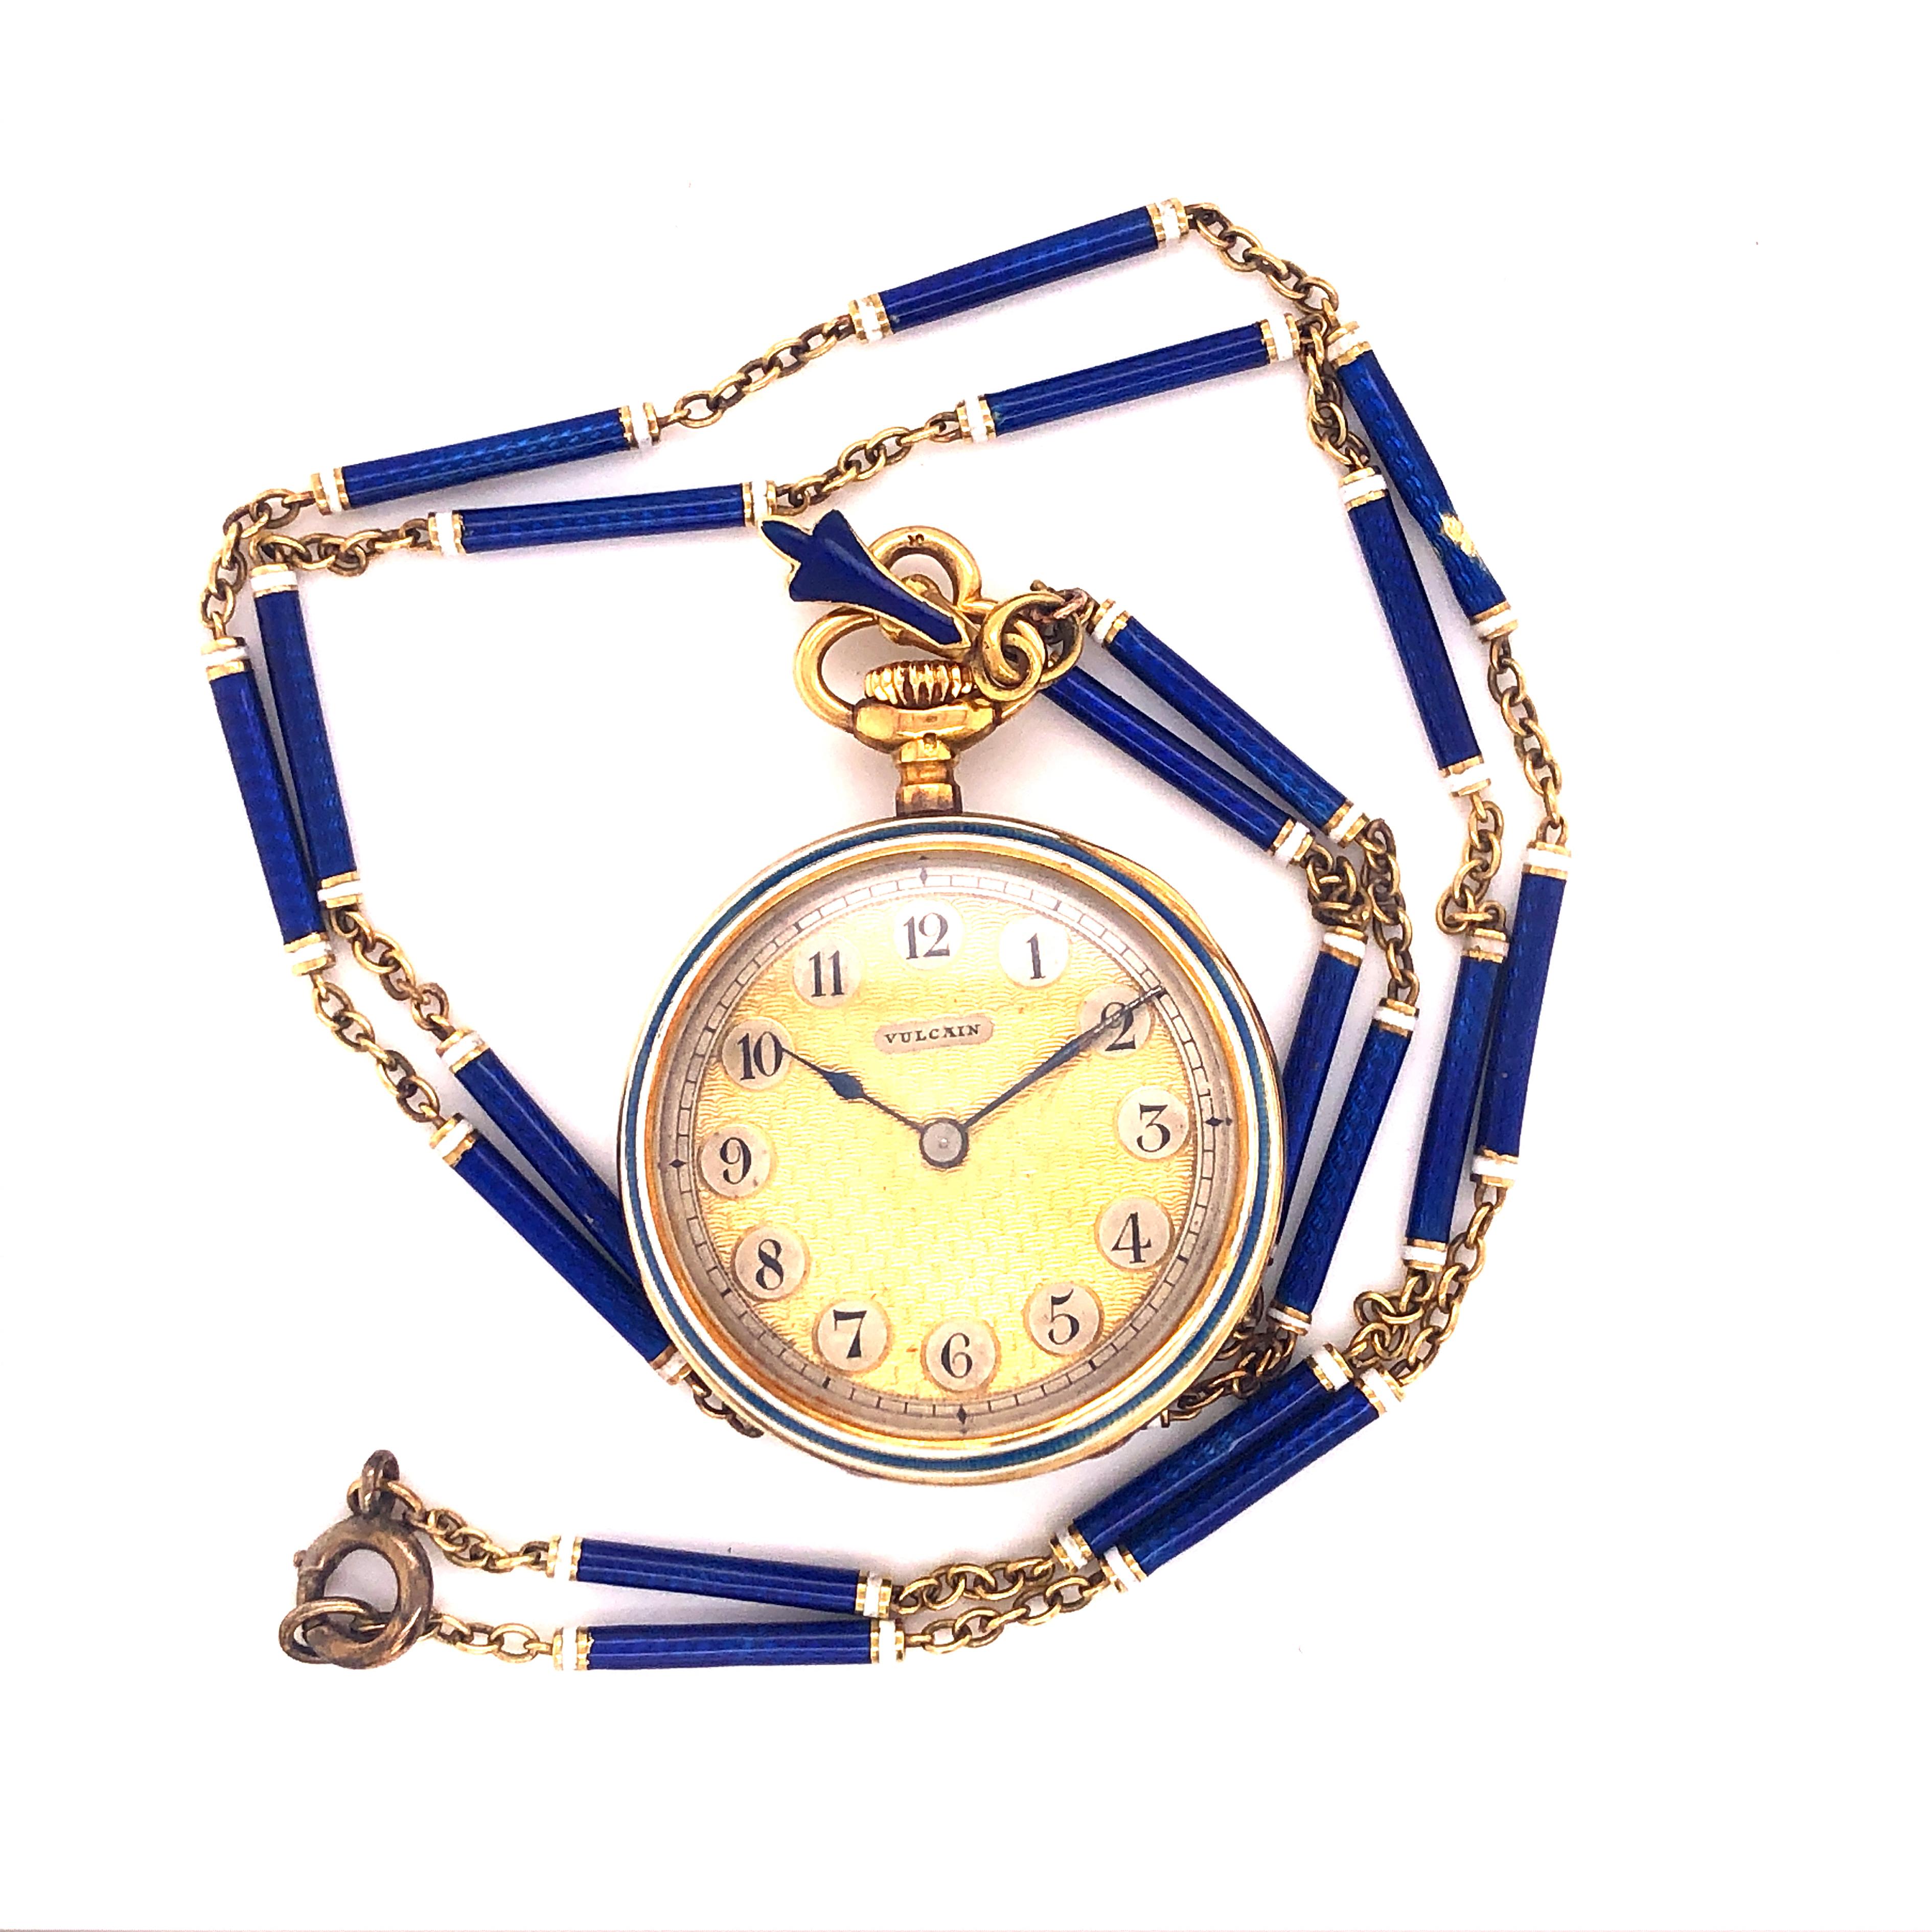 One-of-a-kind Round White Diamond Royal Blue mit weißen Details Hand emailliert viktorianischen Uhr und Halskette. Wilson & Gill ist ein berühmtes Schmuckunternehmen, das 1892 gegründet wurde und seinen Sitz in der Londoner Regent Street hat: Die